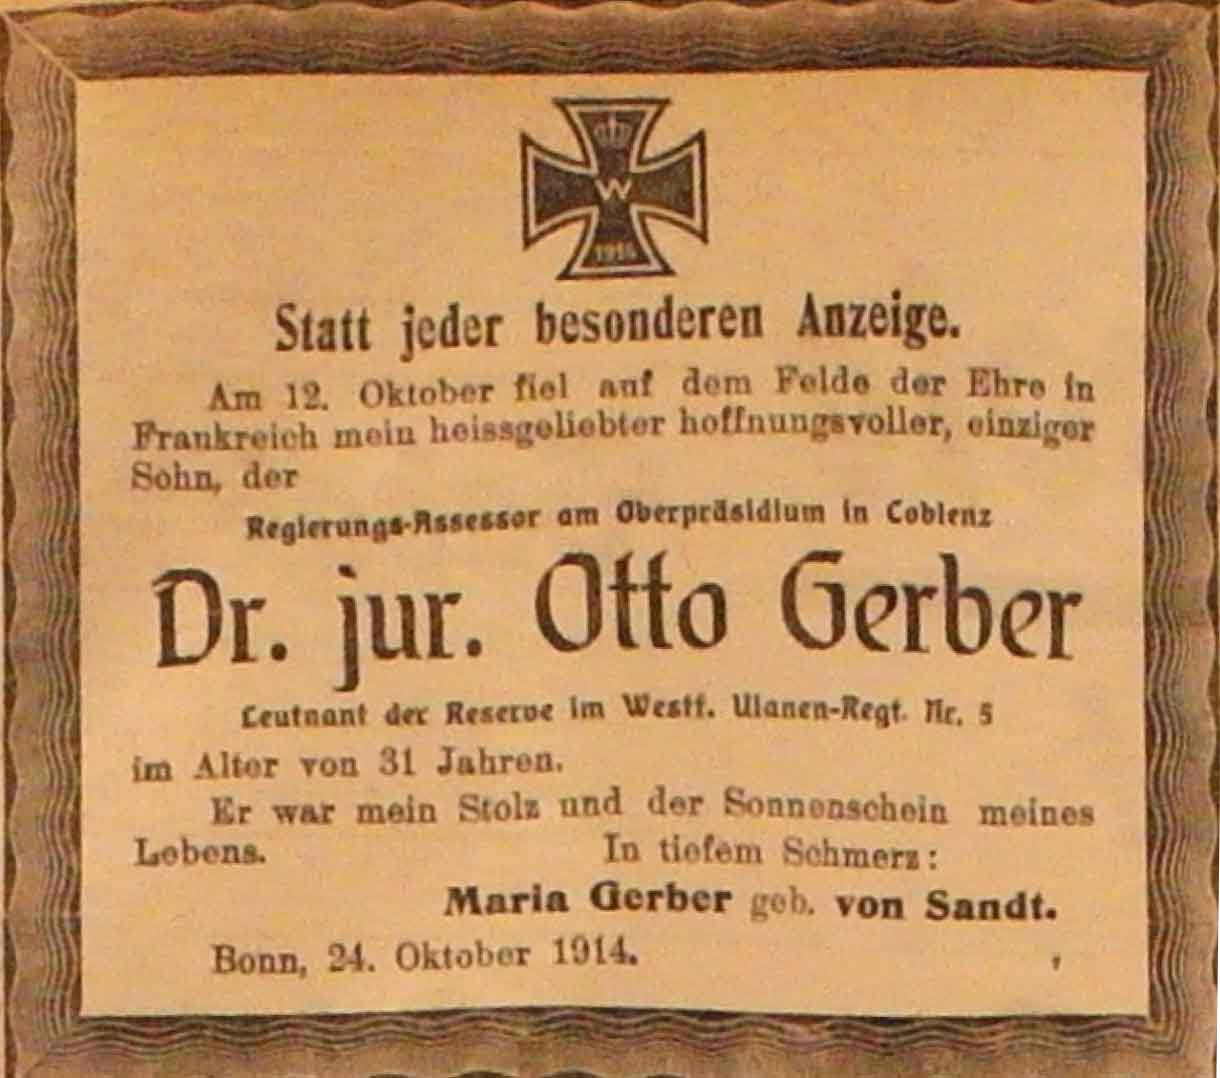 Anzeige im General-Anzeiger vom 25. Oktober 1914